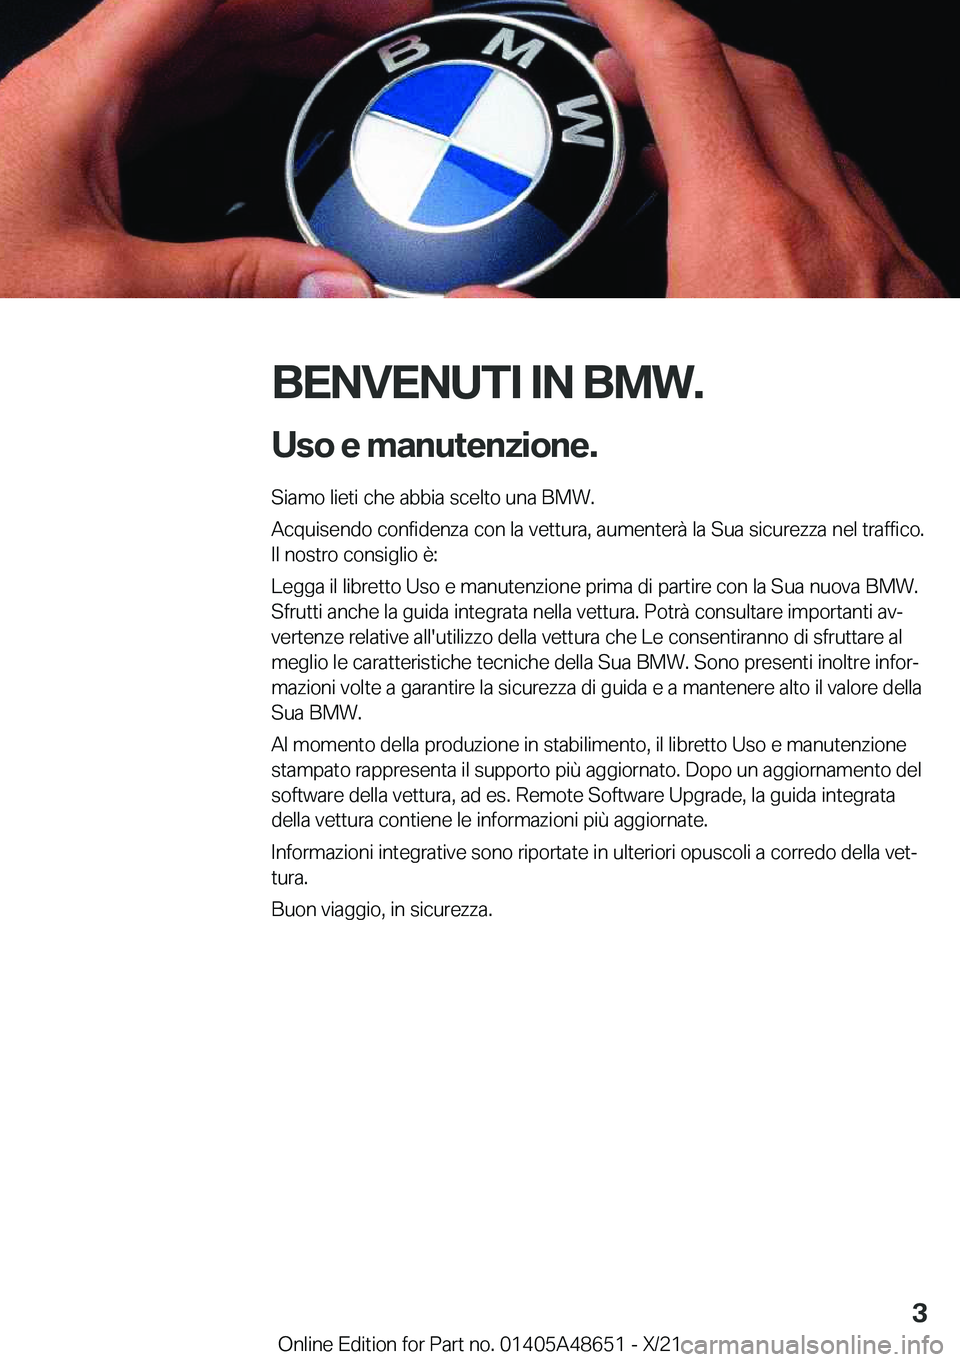 BMW 3 SERIES 2022  Libretti Di Uso E manutenzione (in Italian) �B�E�N�V�E�N�U�T�I��I�N��B�M�W�.�U�s�o��e��m�a�n�u�t�e�n�z�i�o�n�e�.
�S�i�a�m�o��l�i�e�t�i��c�h�e��a�b�b�i�a��s�c�e�l�t�o��u�n�a��B�M�W�.
�A�c�q�u�i�s�e�n�d�o��c�o�n�f�i�d�e�n�z�a��c�o�n�